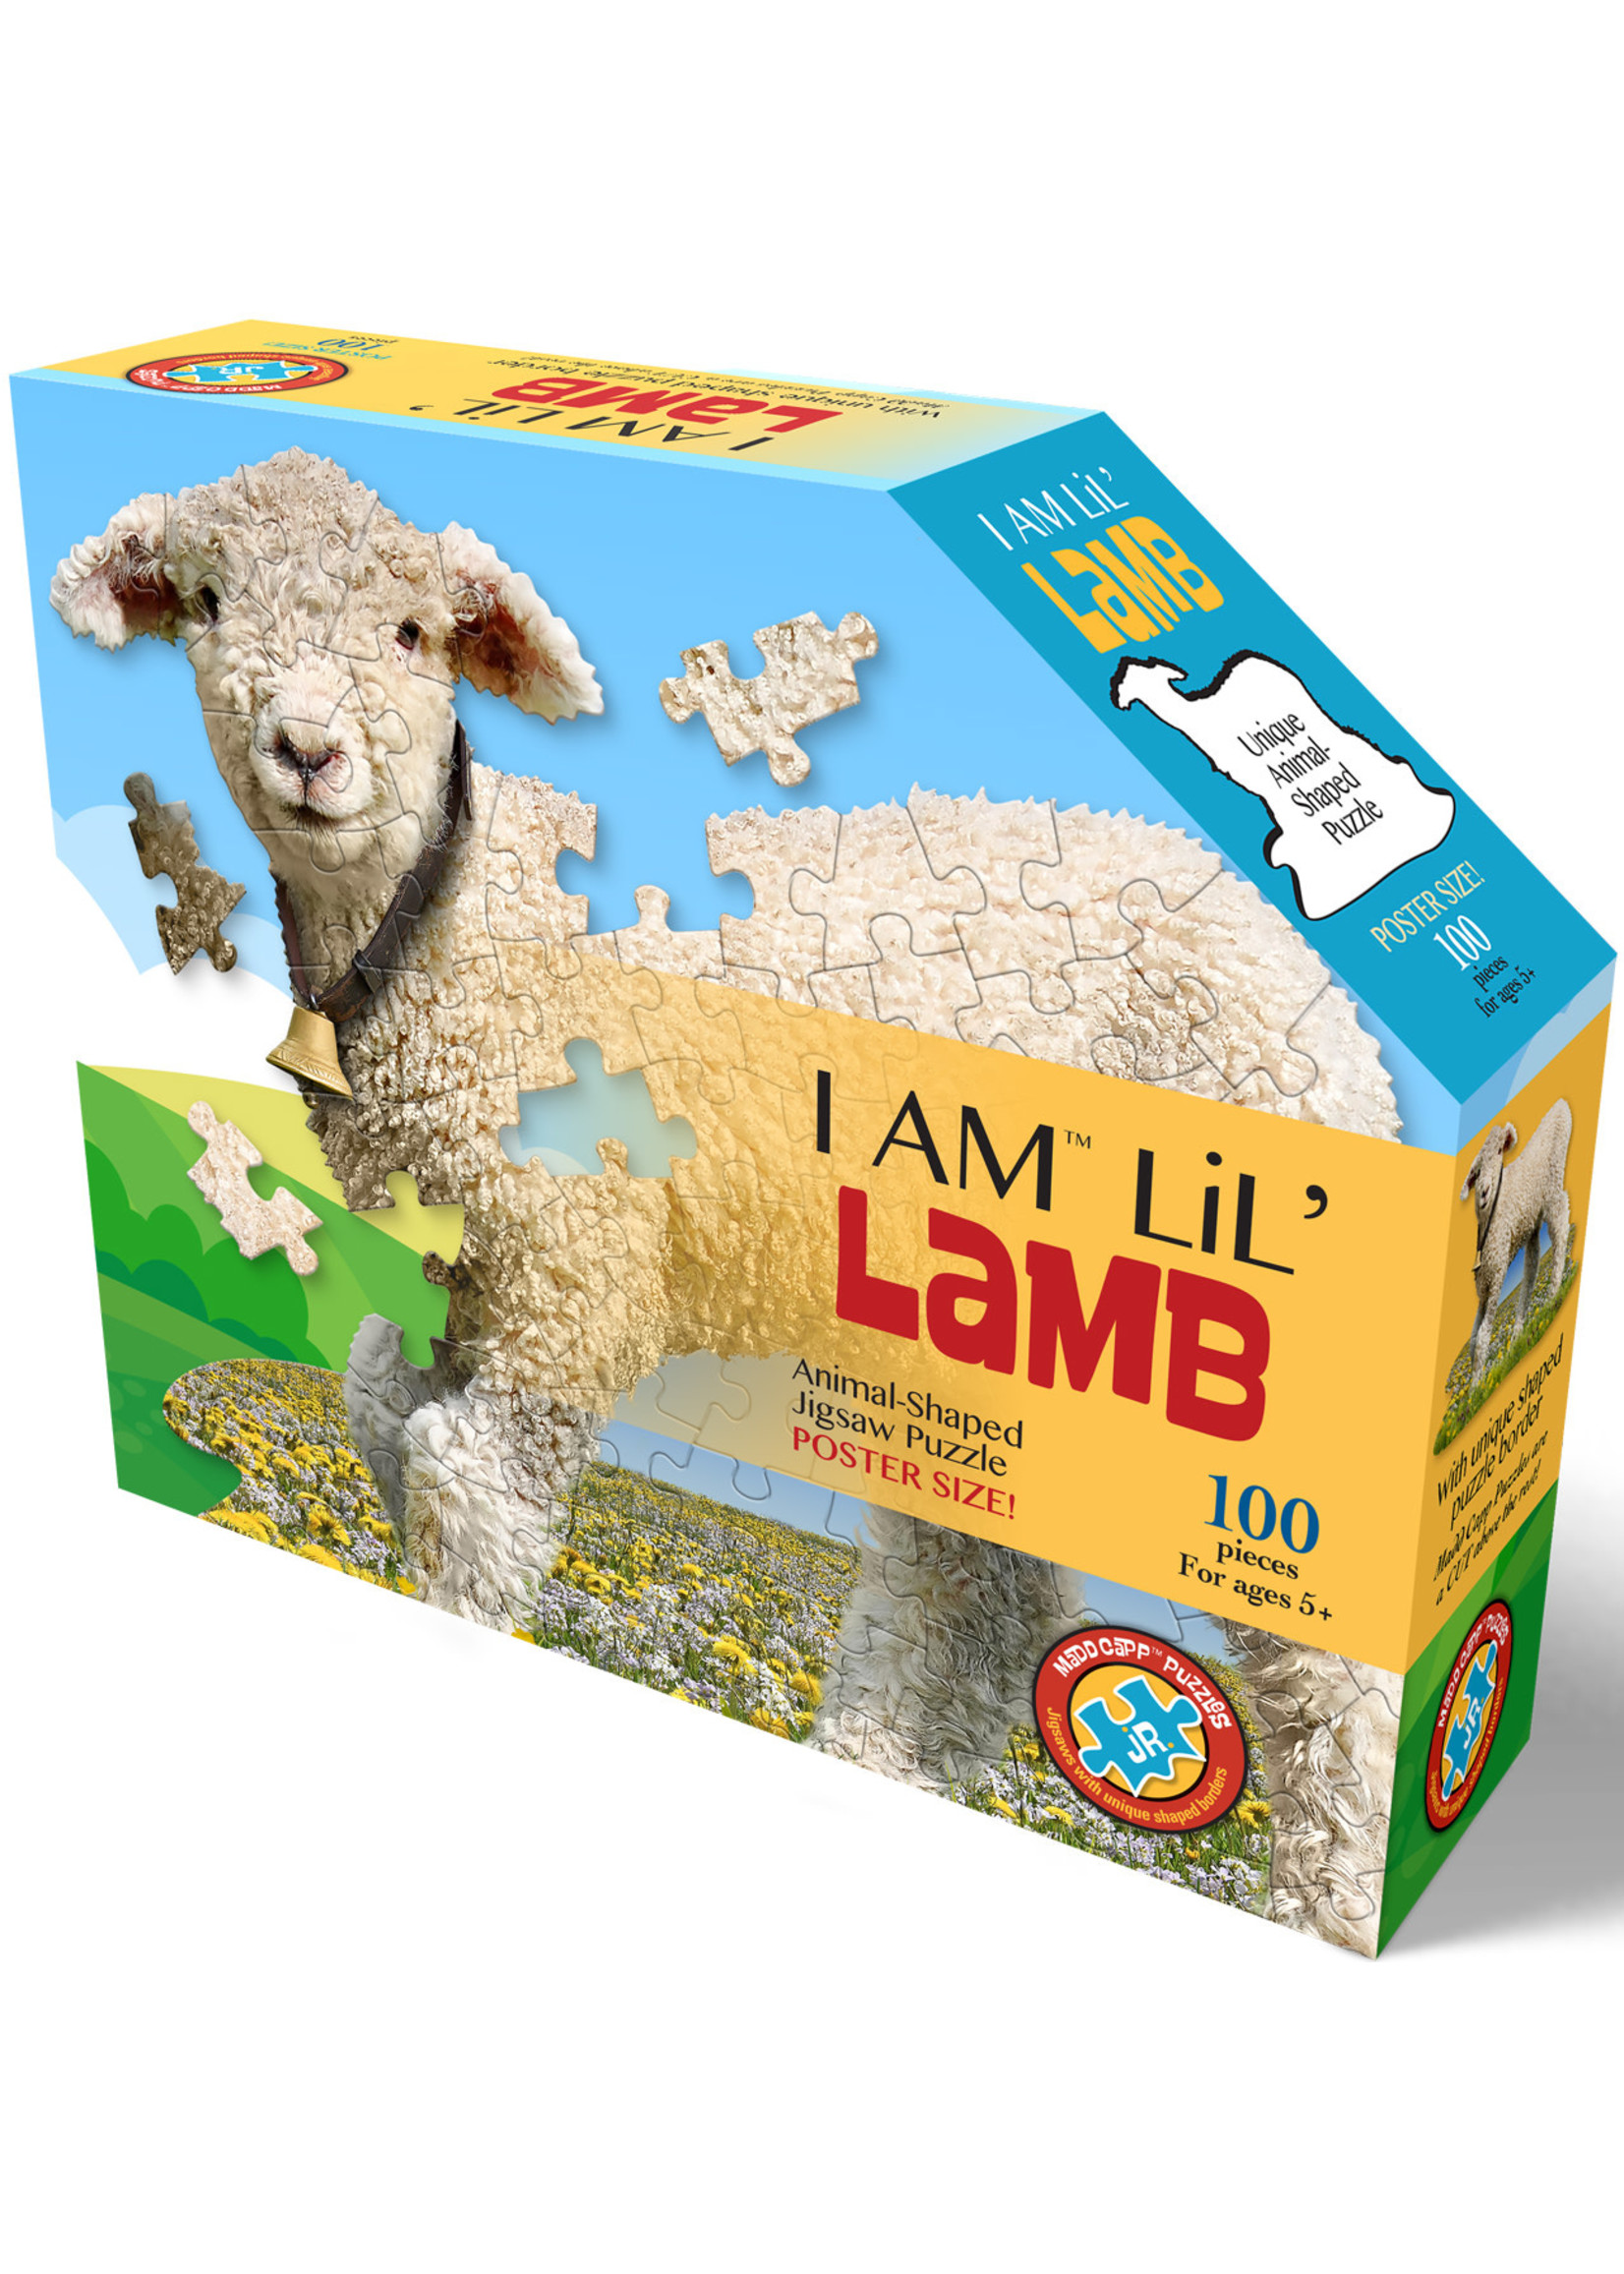 E11Even LLC Madd Capp Entertainment I AM Lil' Lamb 100